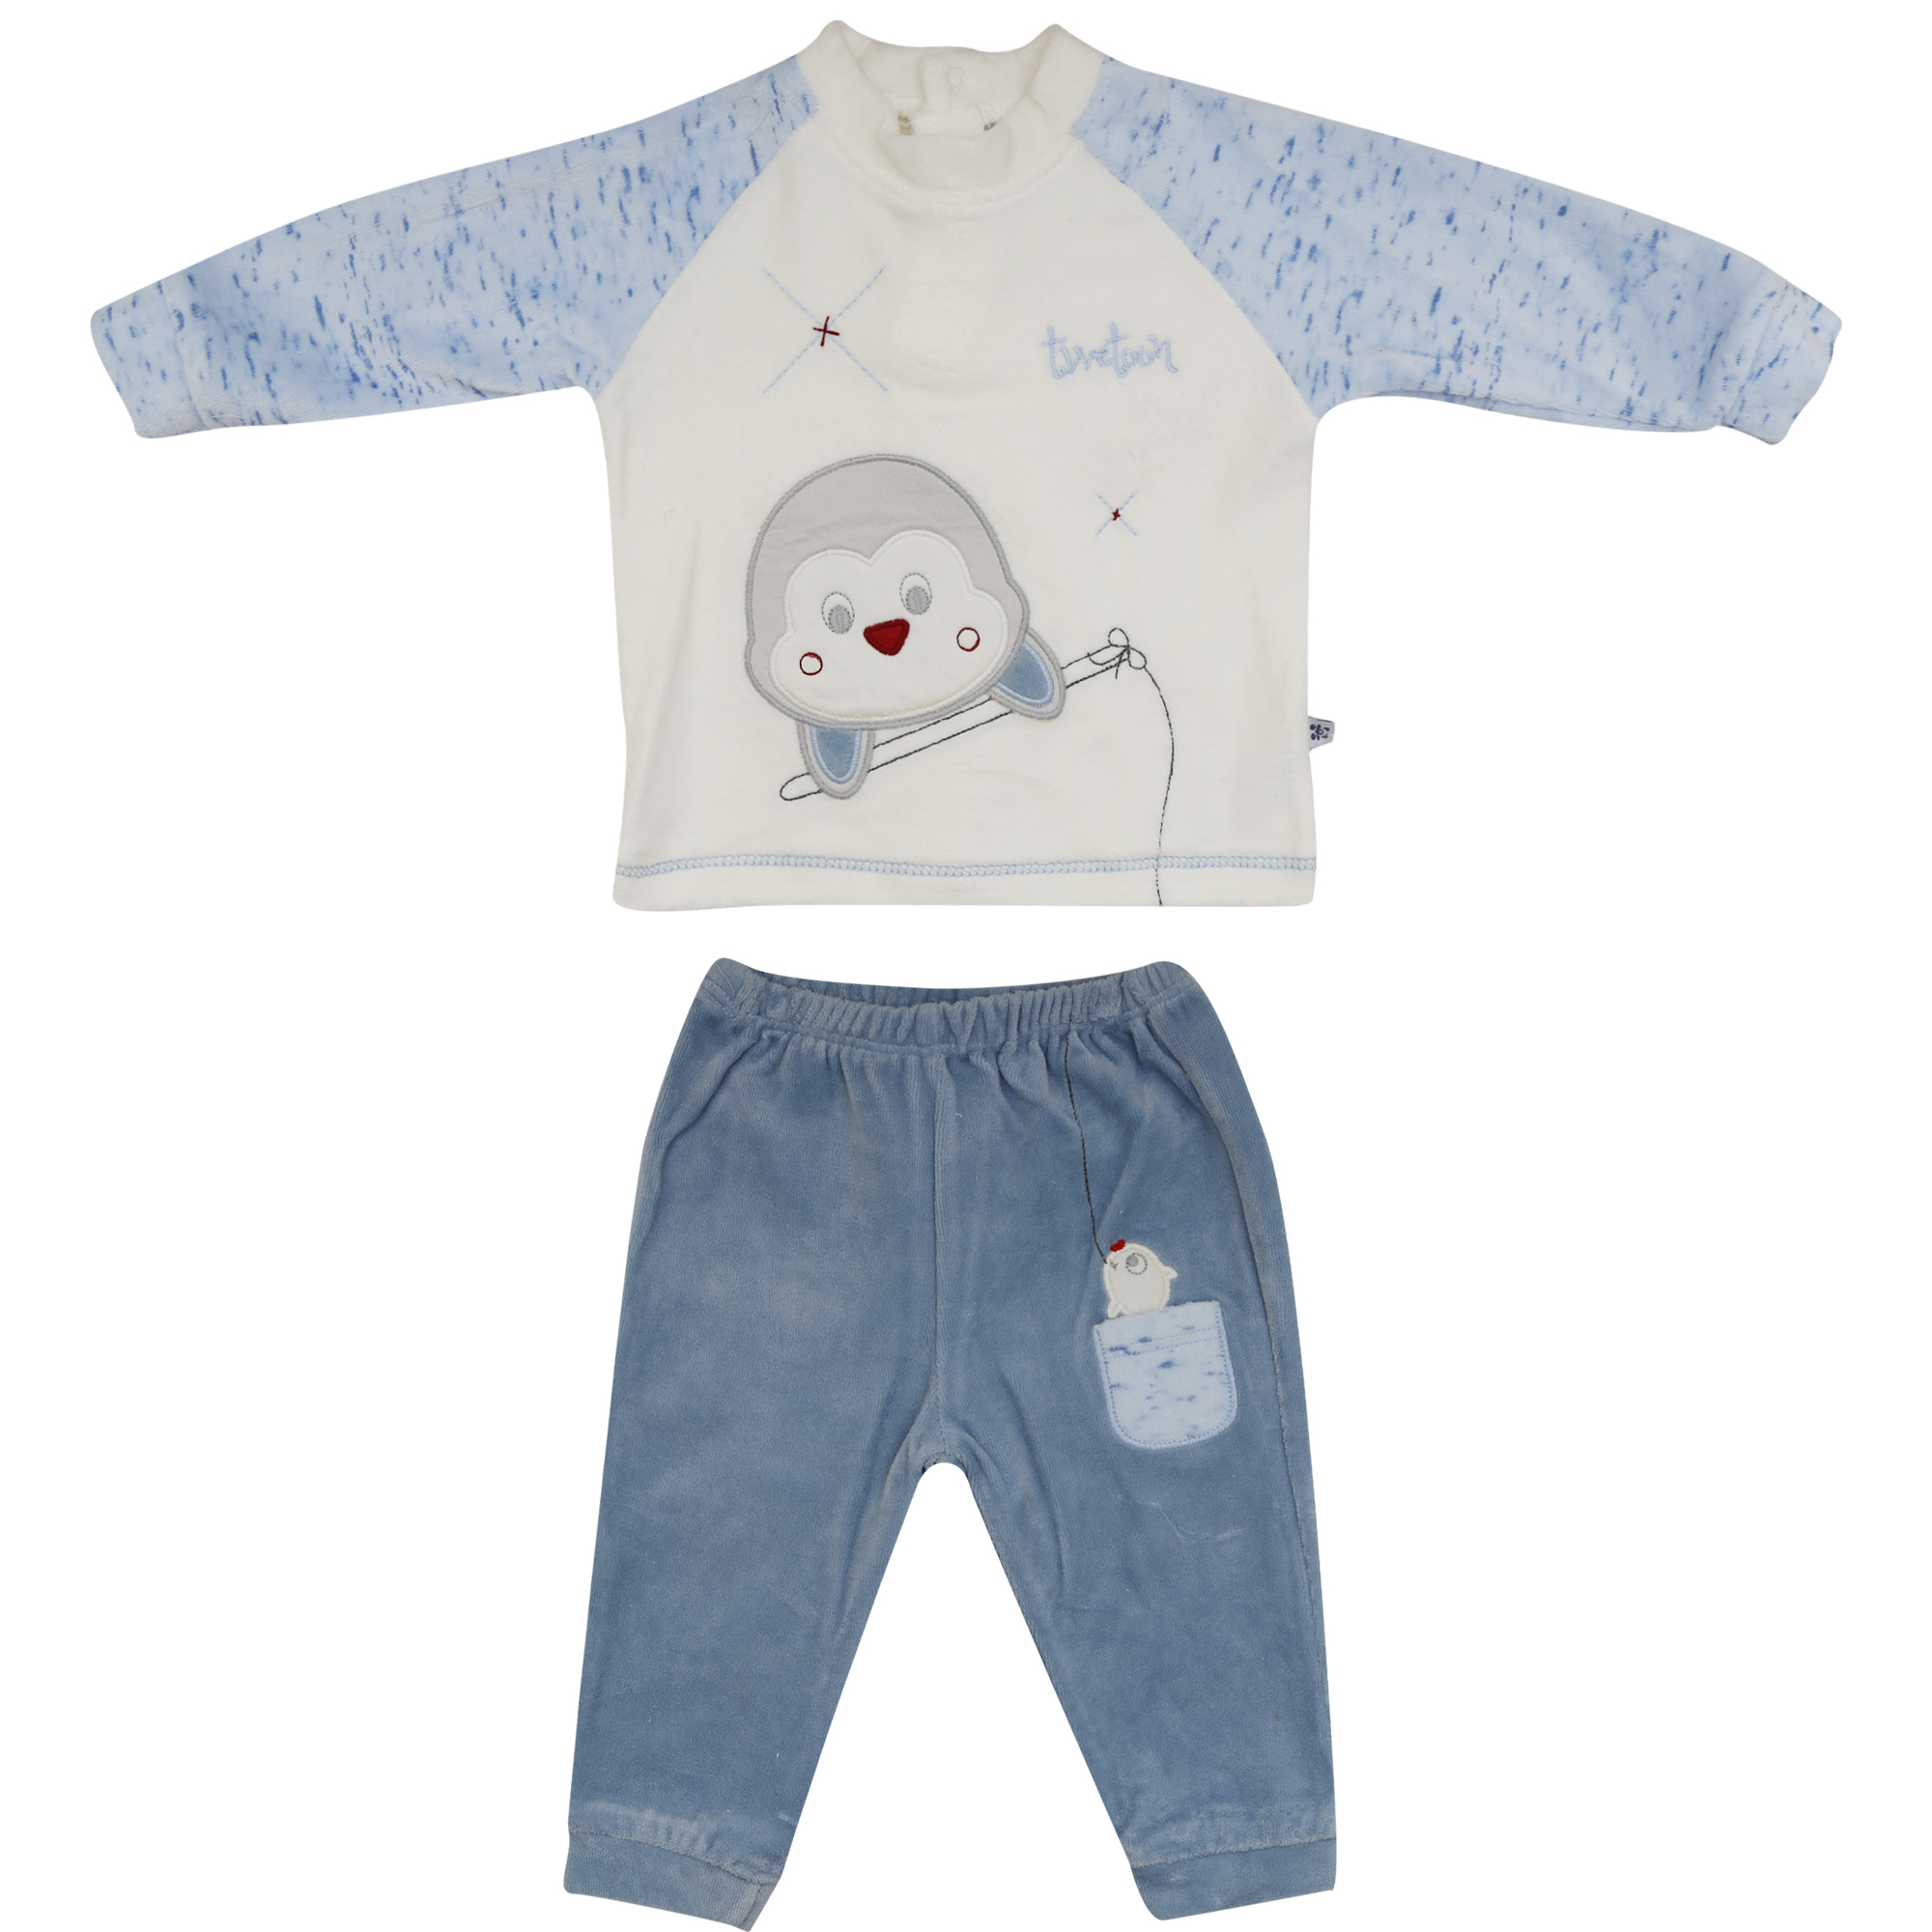 ست تی شرت و شلوار نوزاد کد F-1022